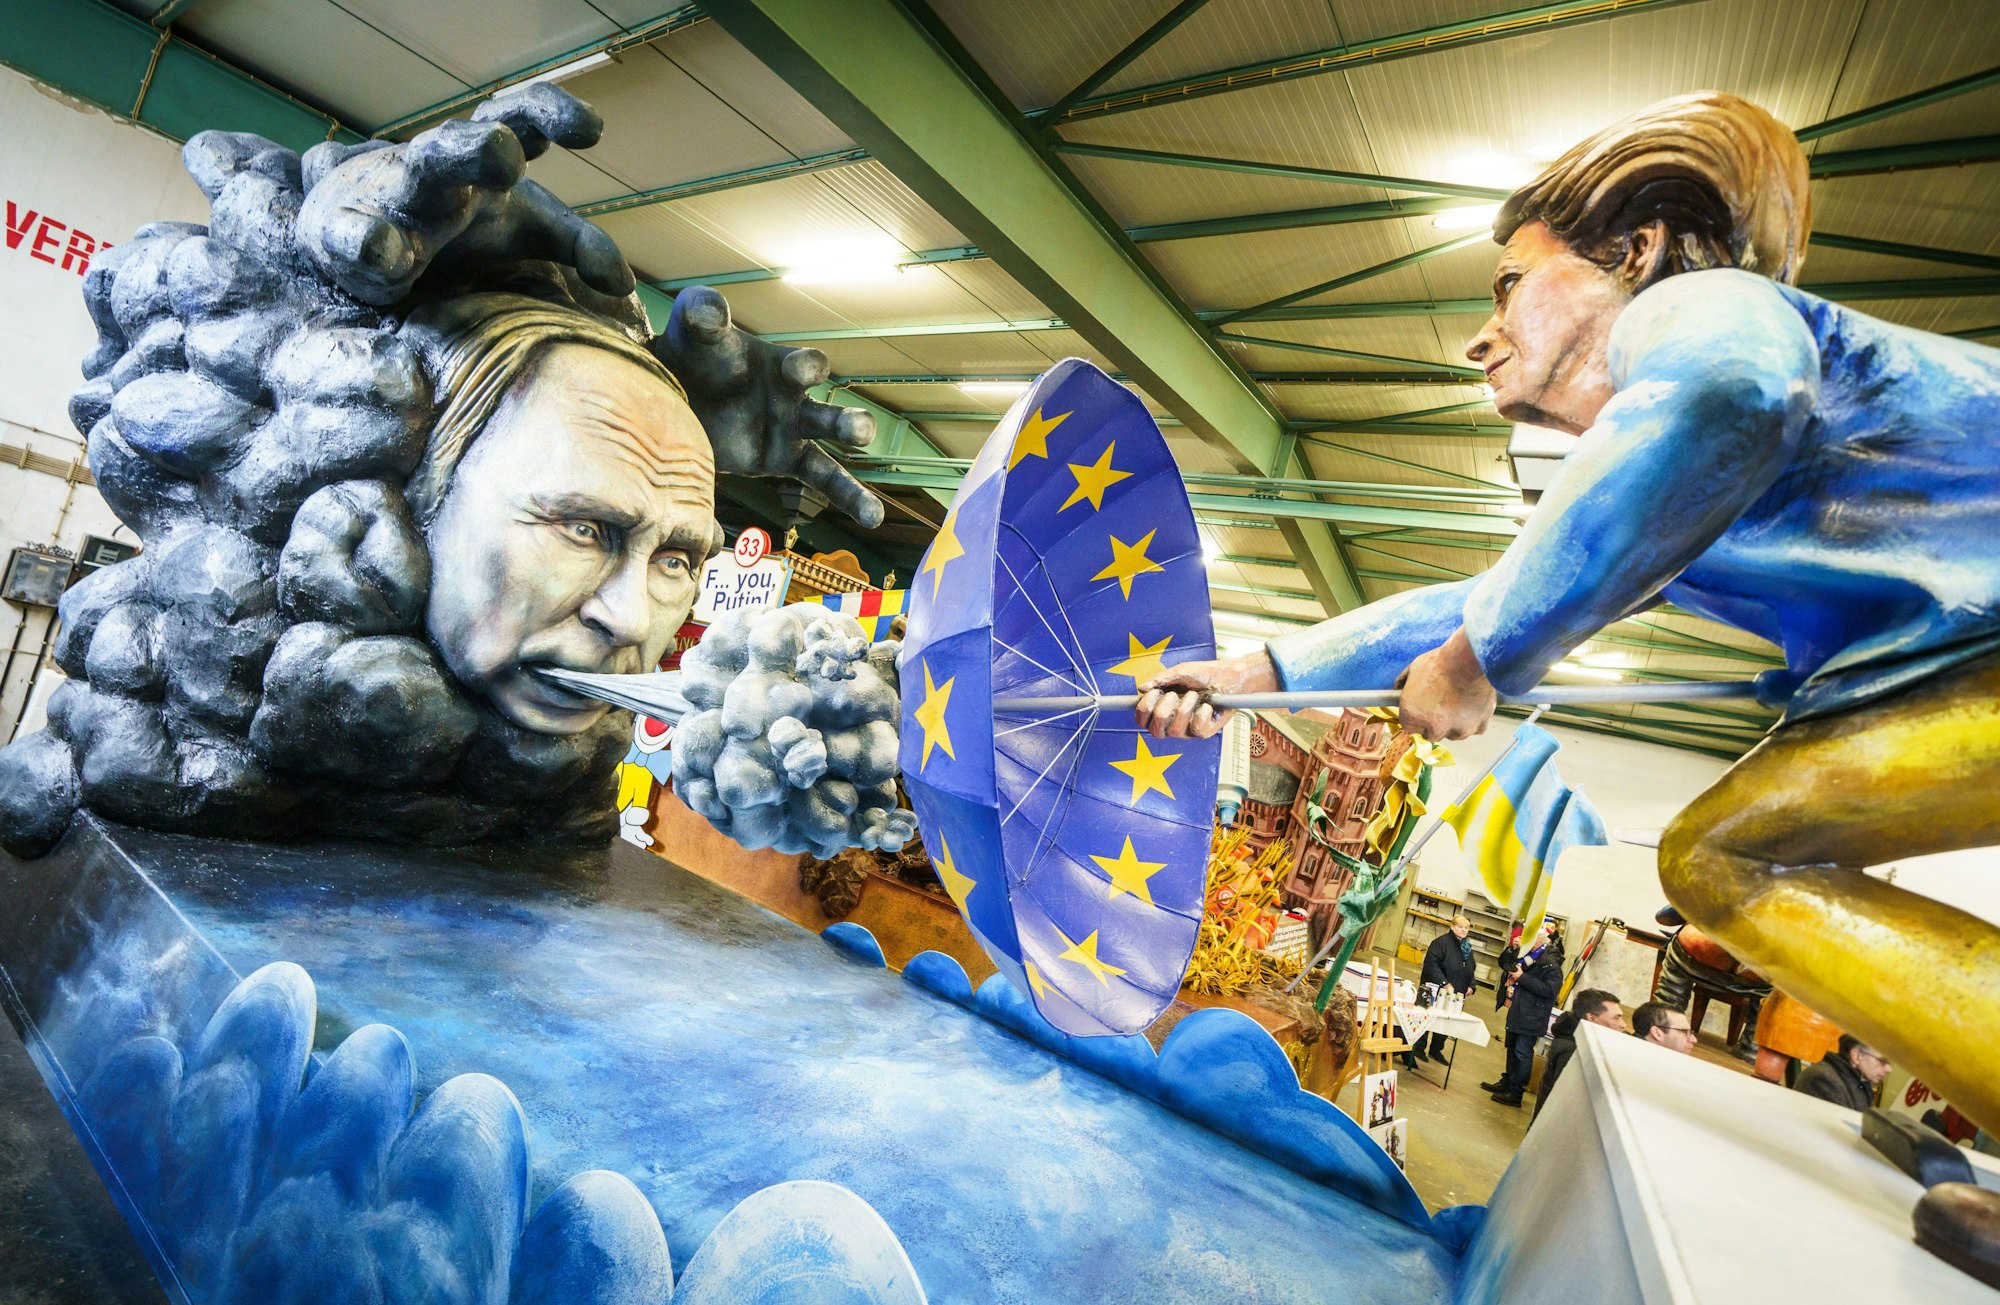 «Scharfer Ostwind» heißt ein Motivwagen der Mainzer Fastnacht. Es zeigt eine Darstellung des russischen Präsidenten Putin, der Wind gegen einen Schirm in den Farben der EU-bläst, der wiederum gehalten wird von der Präsidentin der Europäischen Kommission, Ursula von der Leyen.